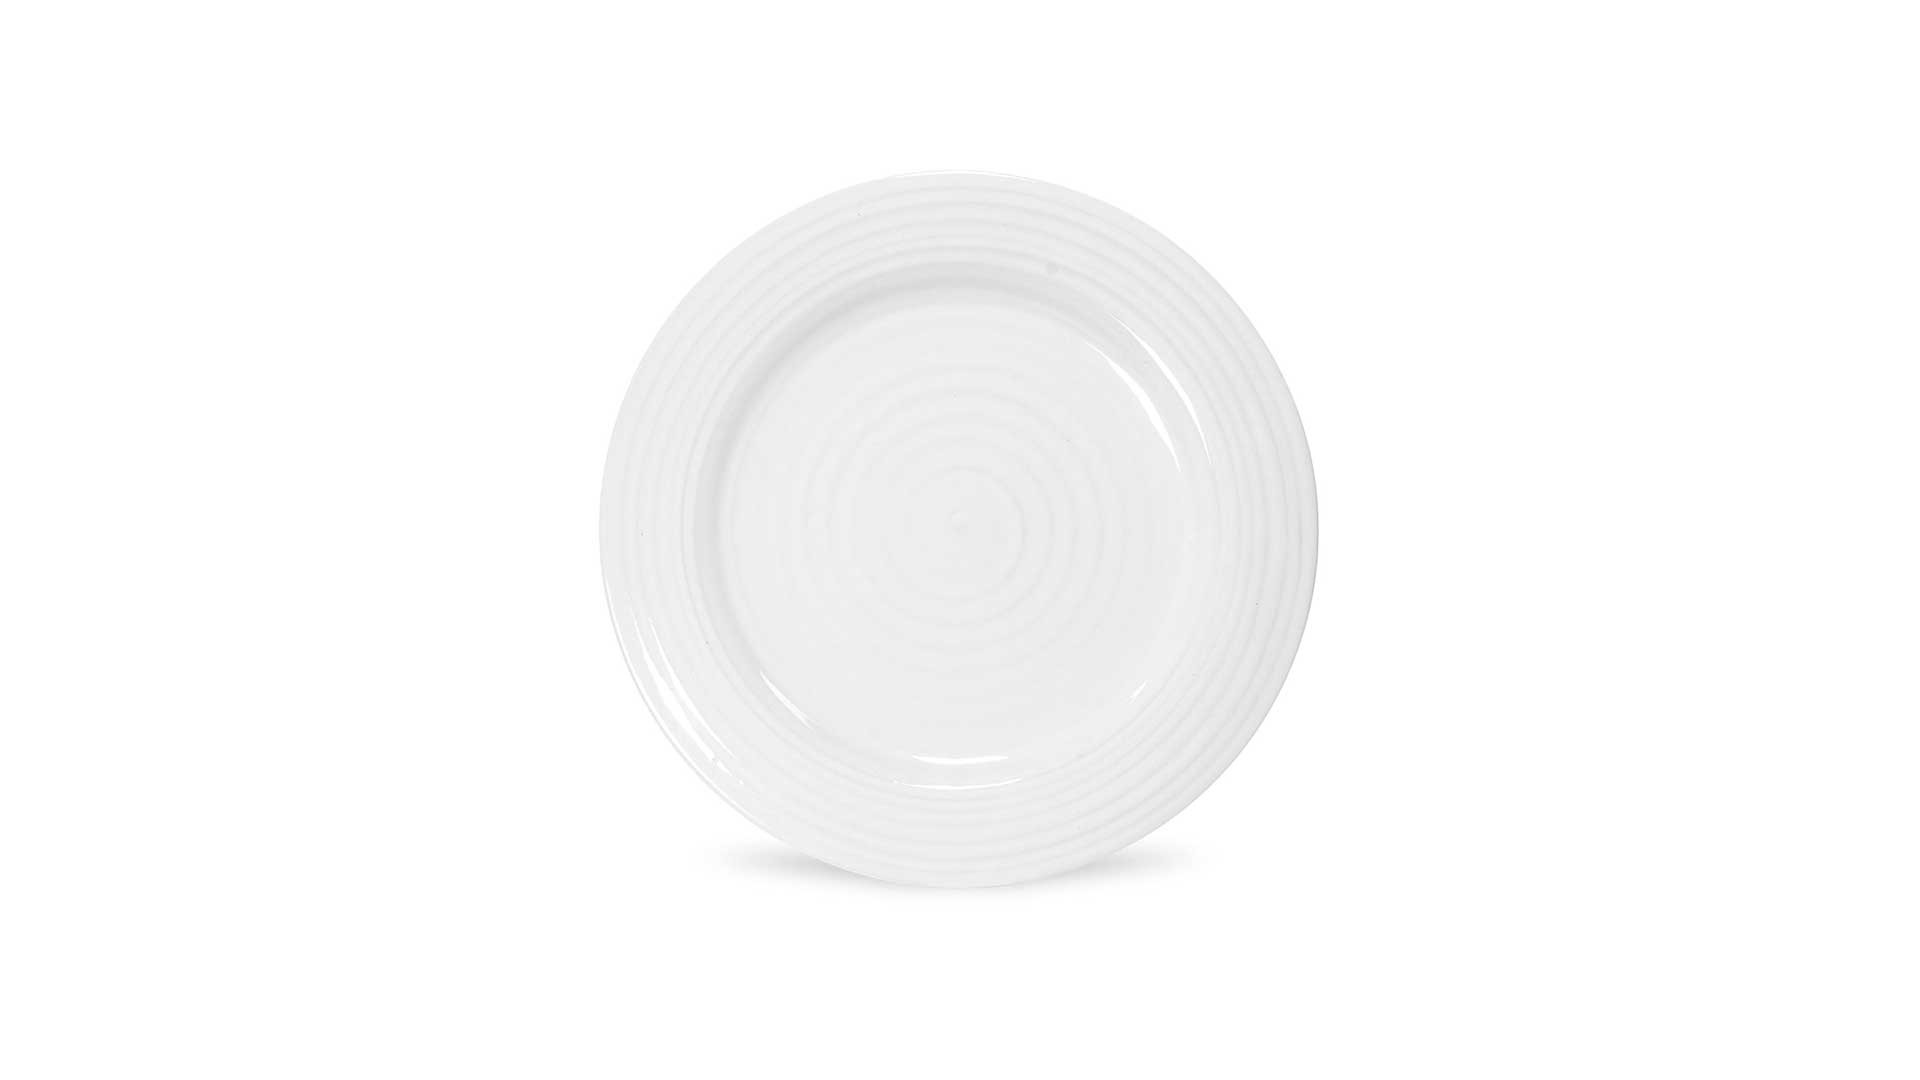 Тарелка обеденная Portmeirion Софи Конран для Портмейрион 28 см, белая